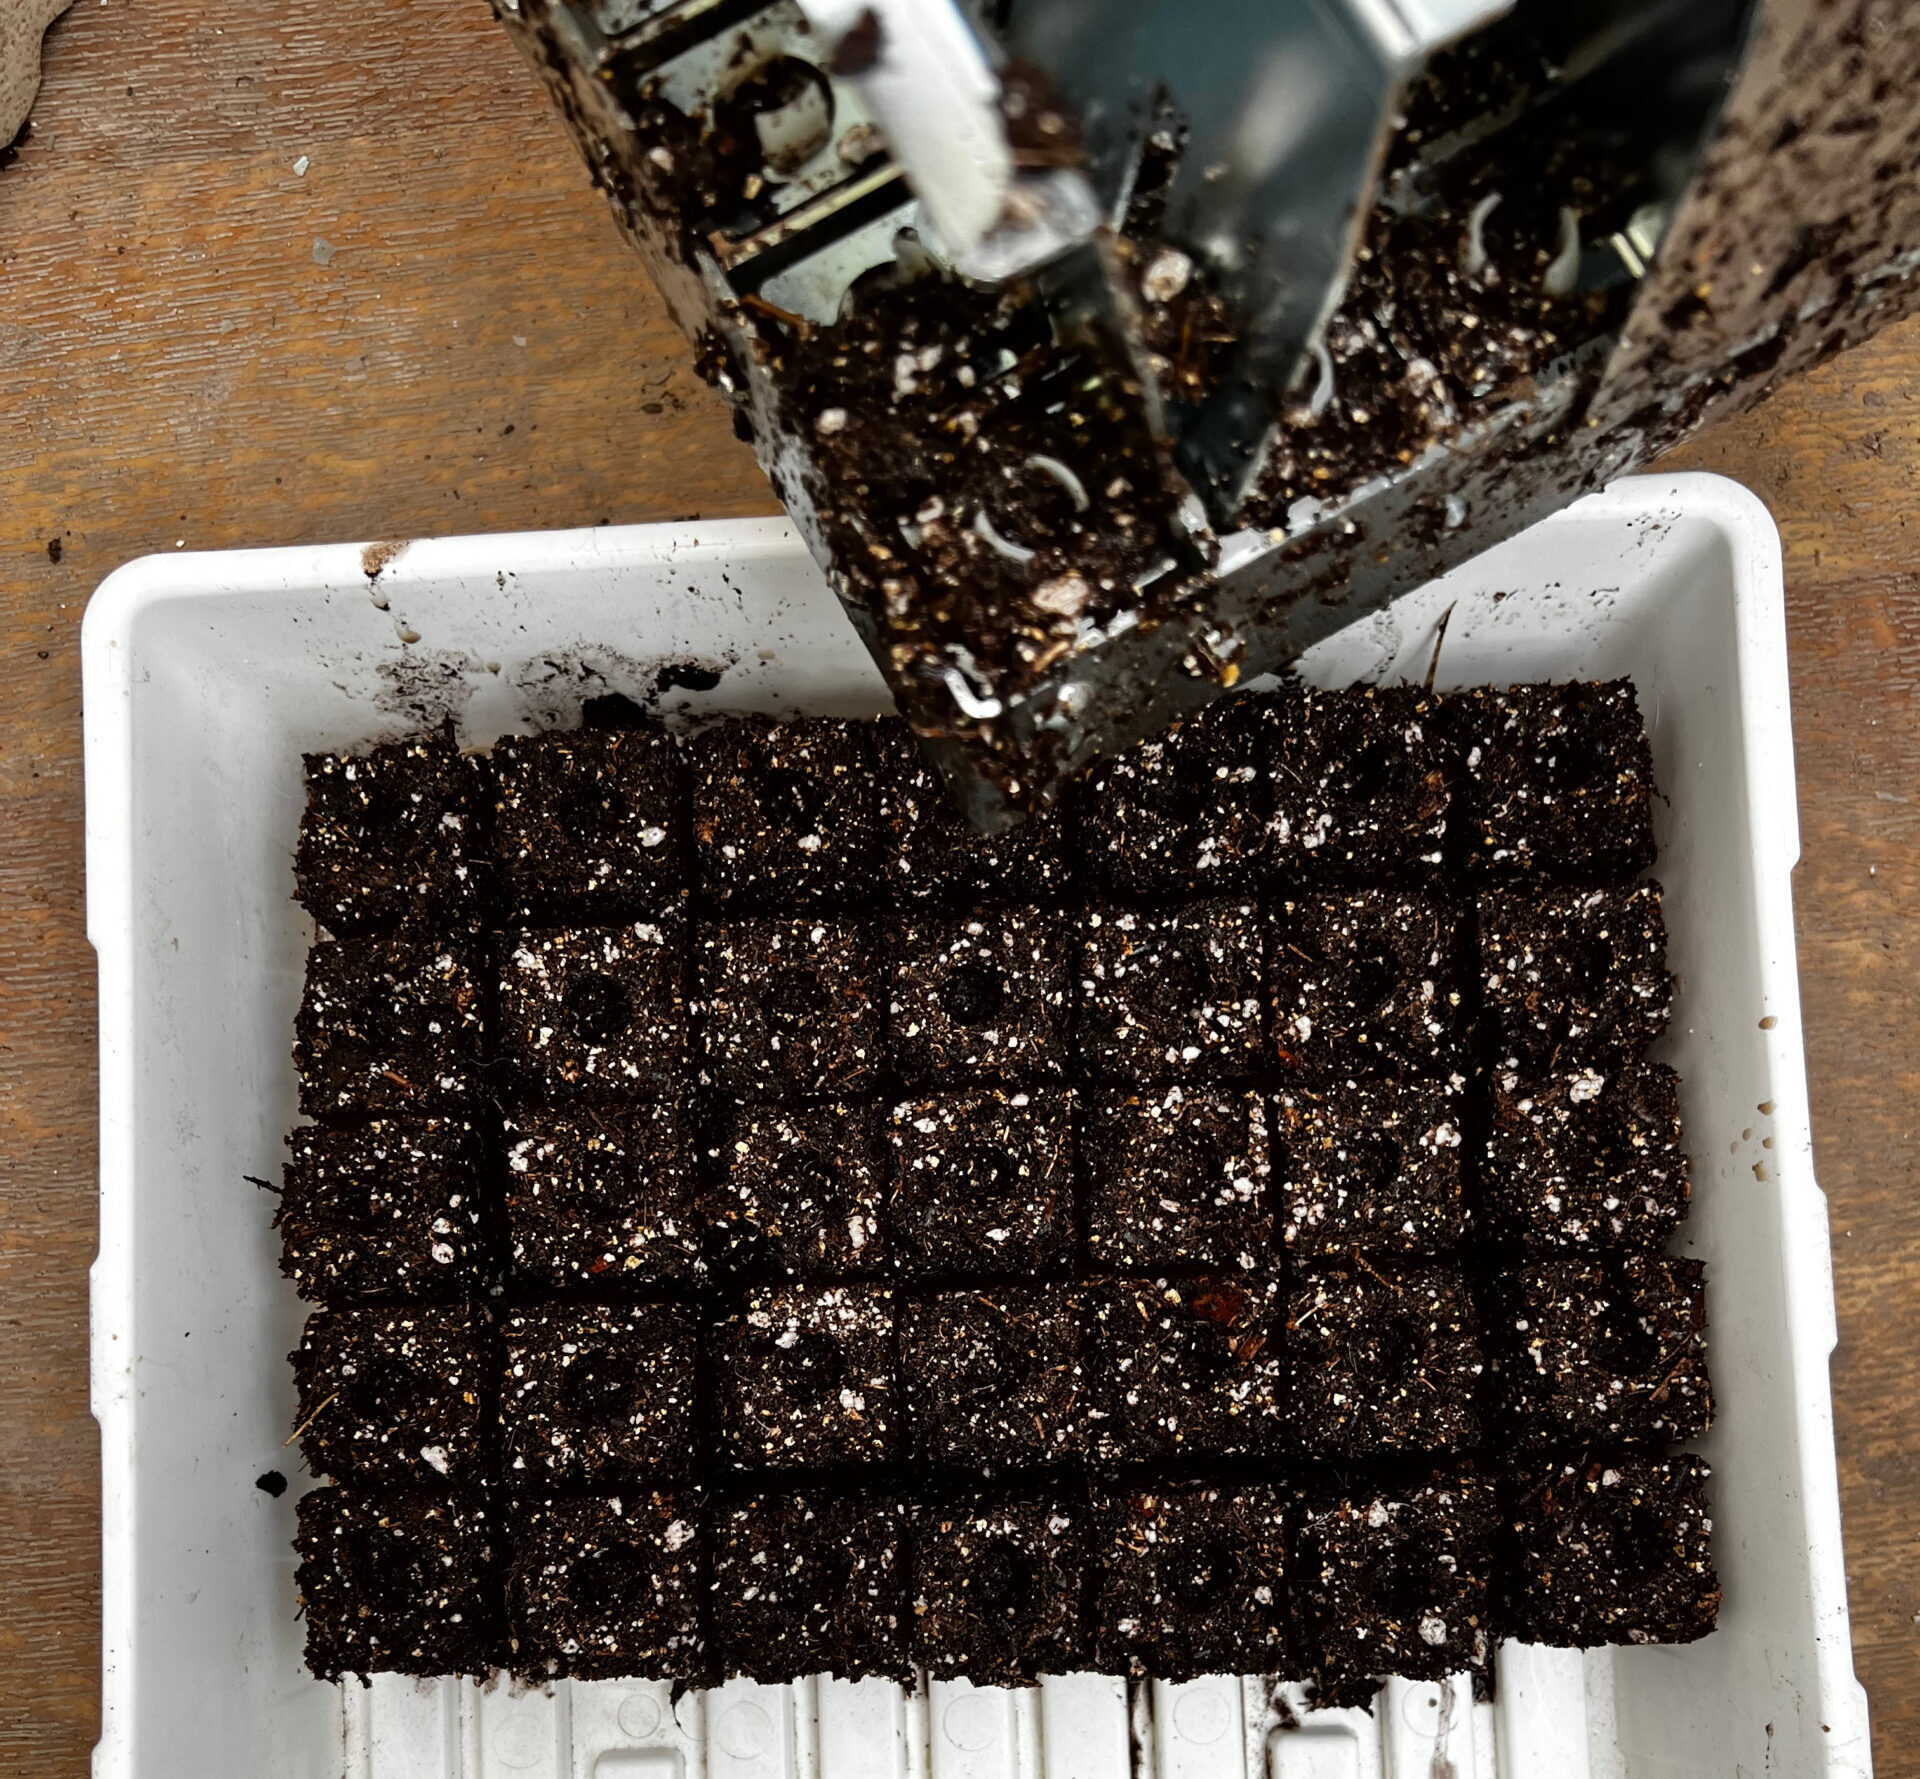 soil blocks in a tray